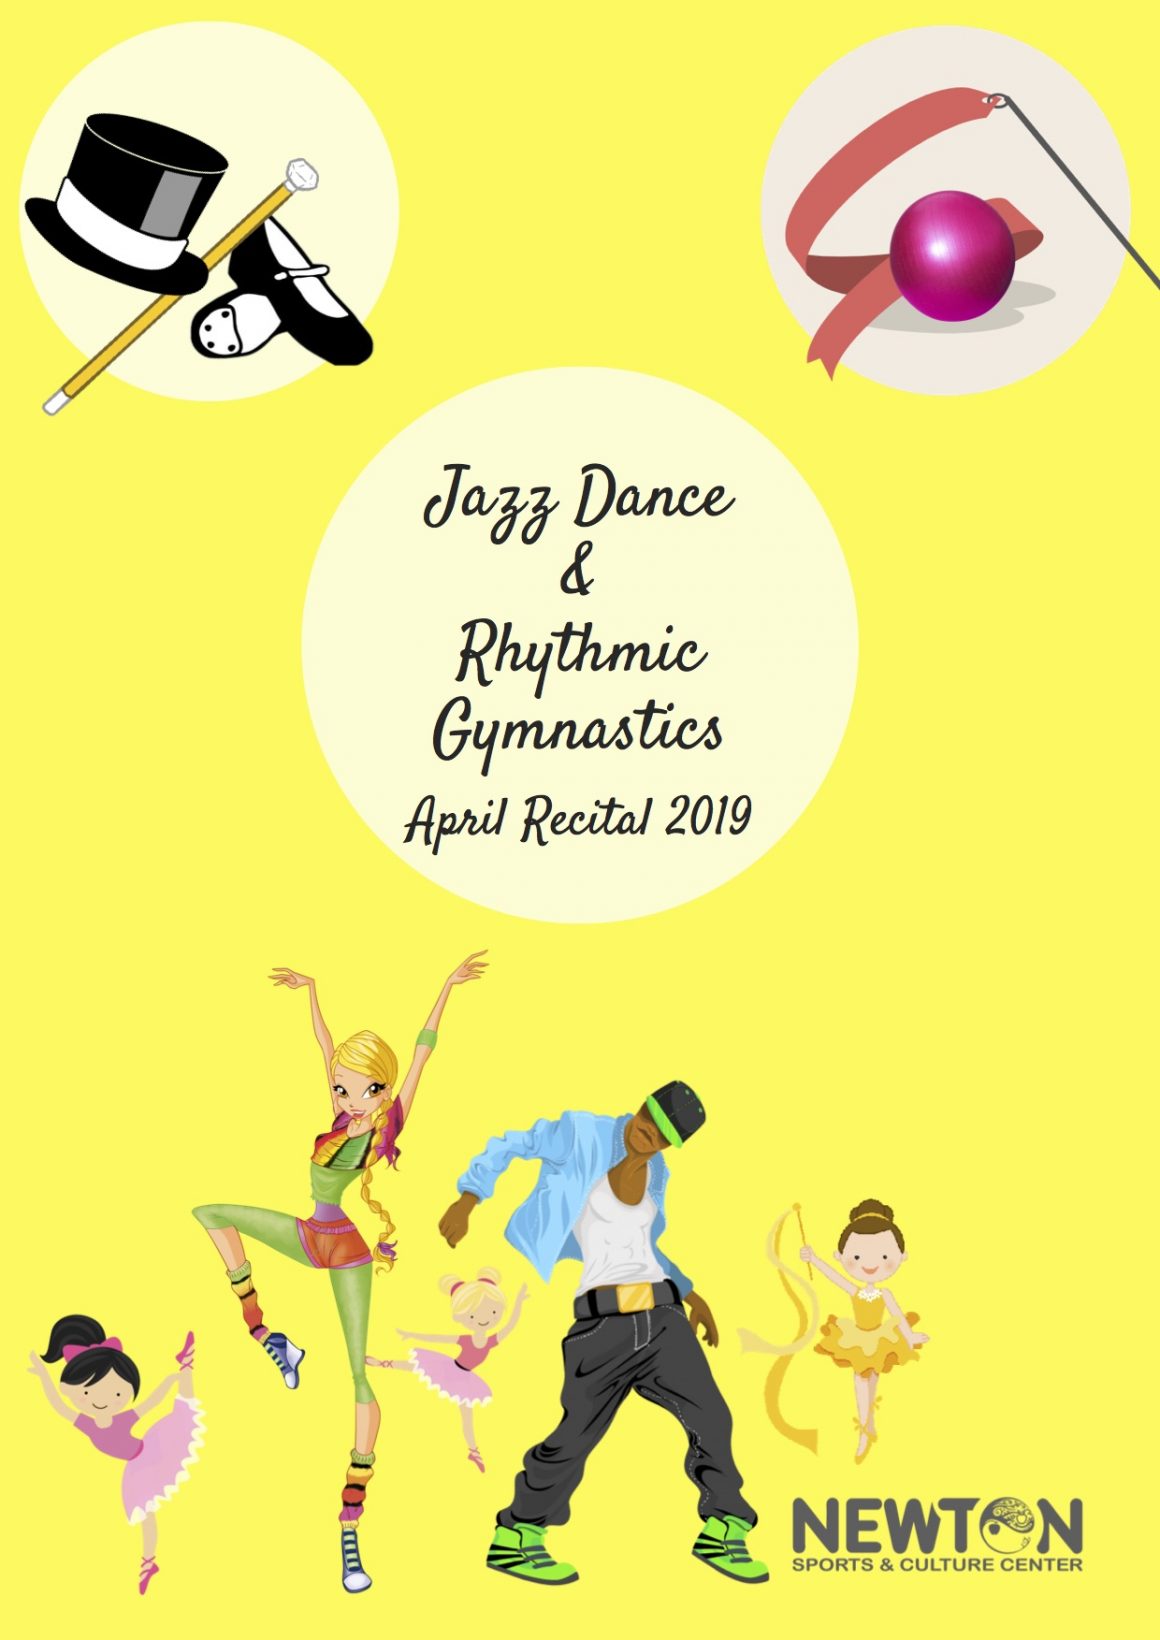 Πρόγραμμα παράστασης Jazz Dance & Rhythmic Gymnastics April 2019